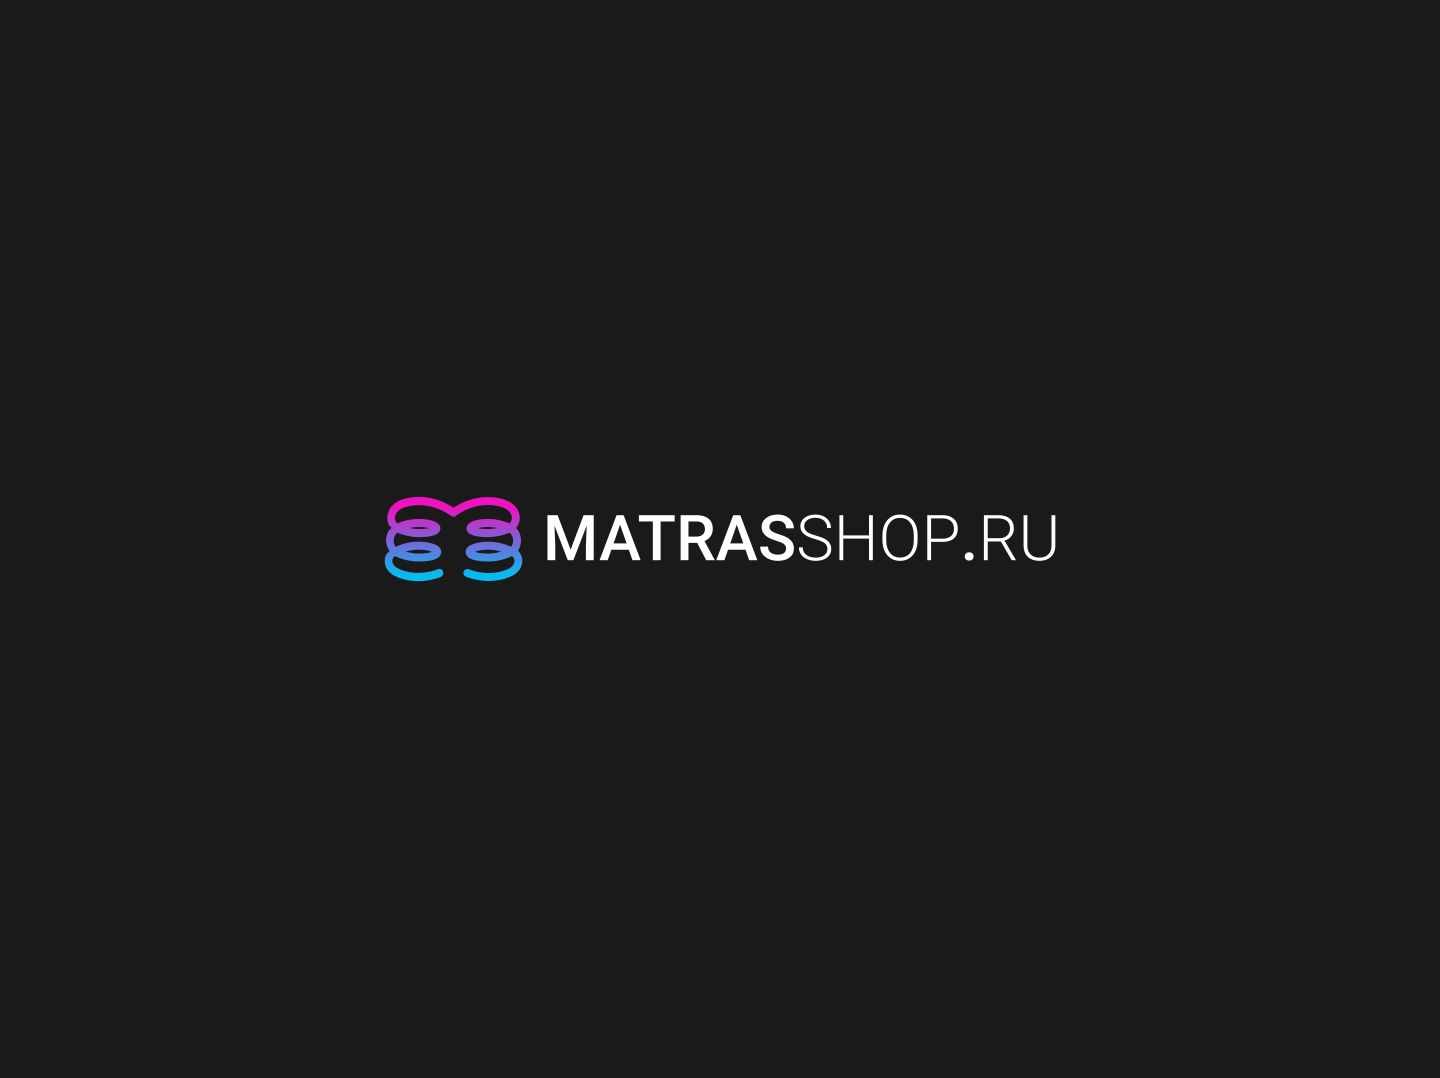 Логотип для Логотип для сети магазинов MATRASSHOP.RU - дизайнер georgian